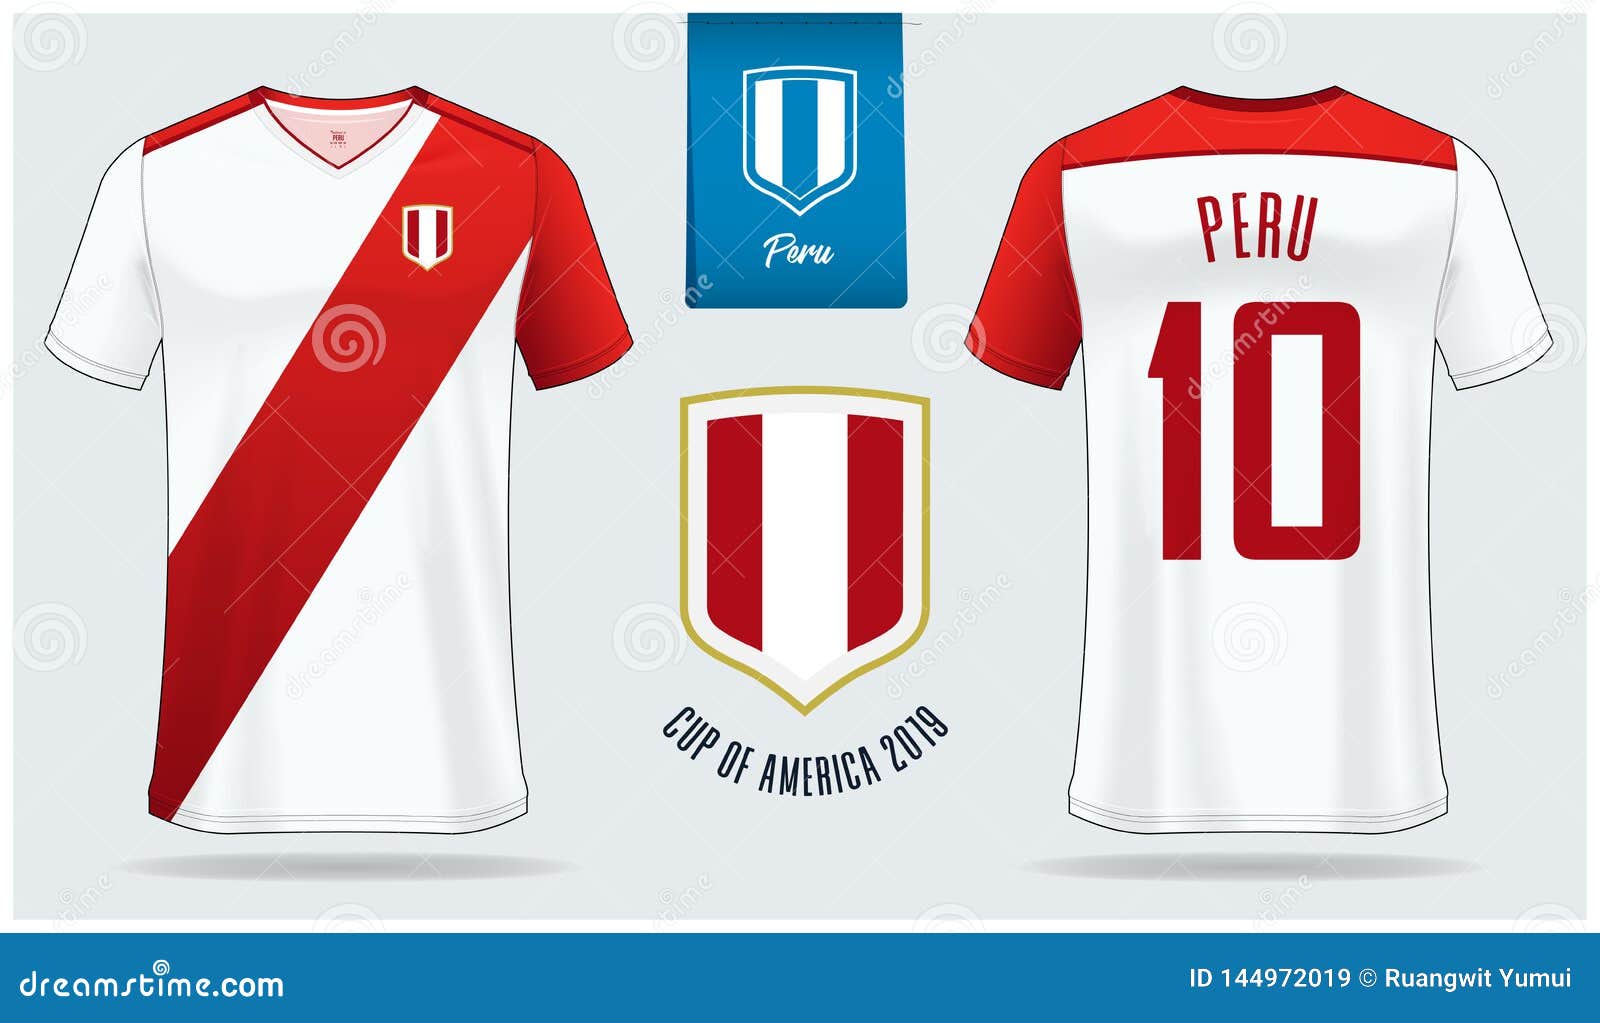 official peru soccer jersey